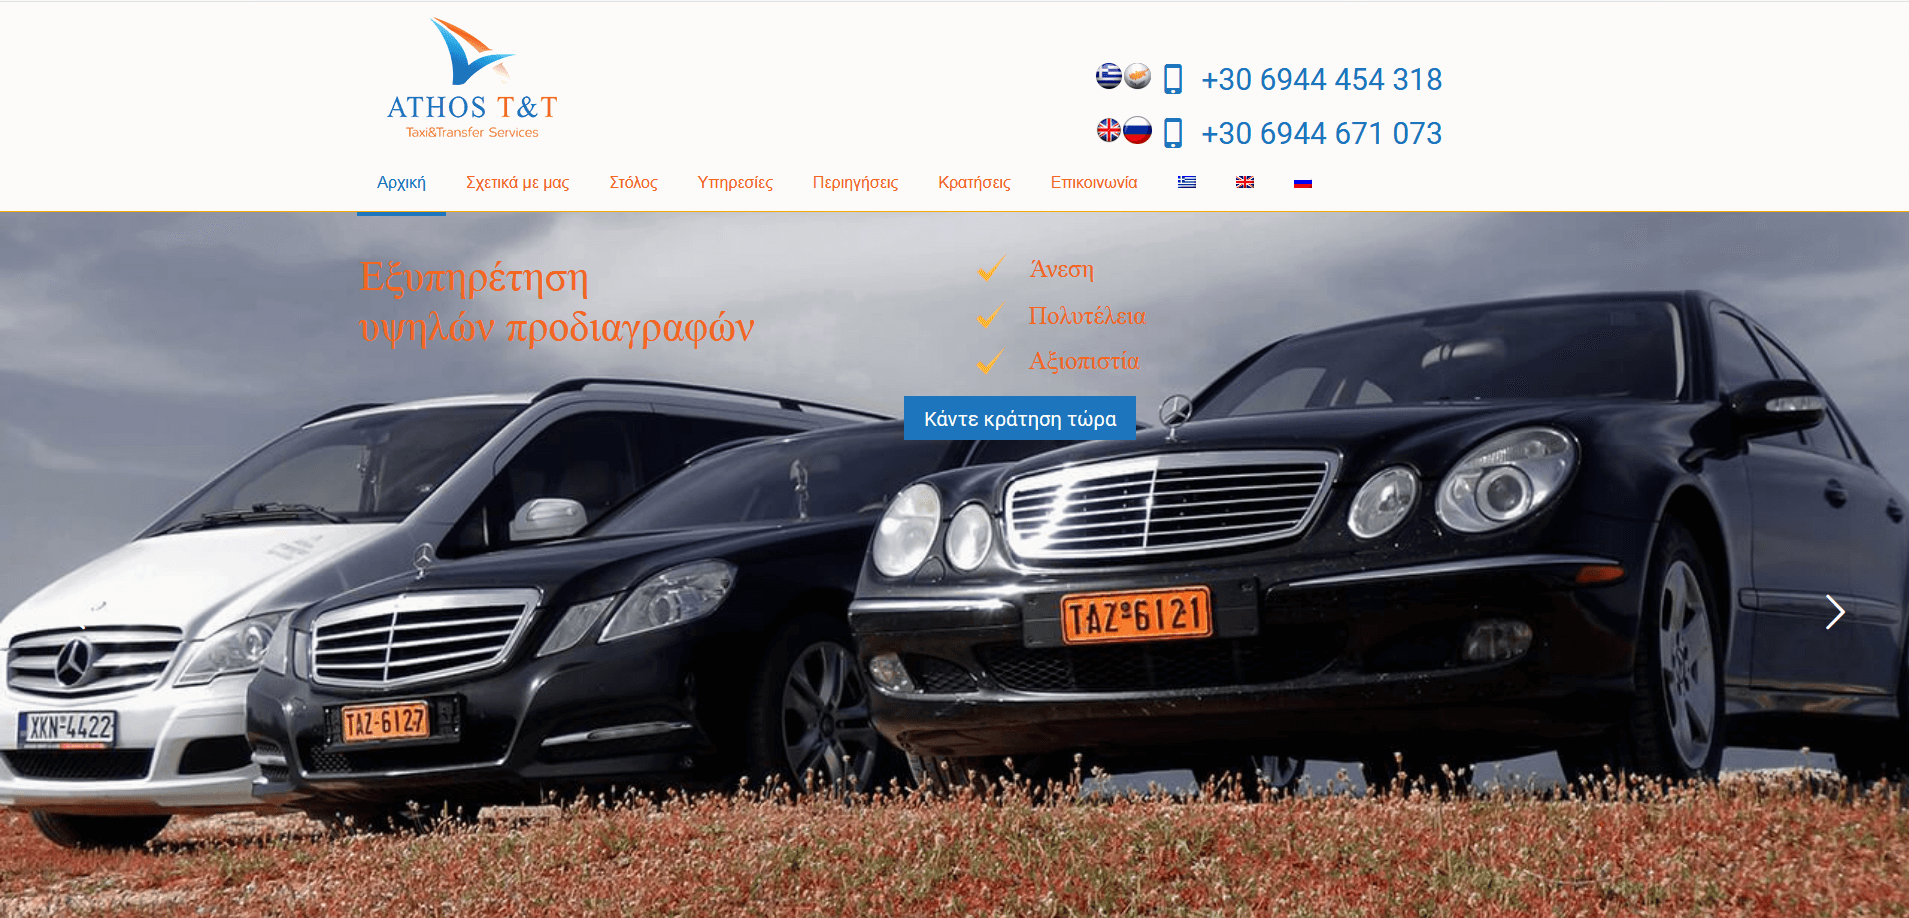 Ανακατασκευή Ιστοσελίδας Athos Taxi & Transfer Services - Smartwebdesign